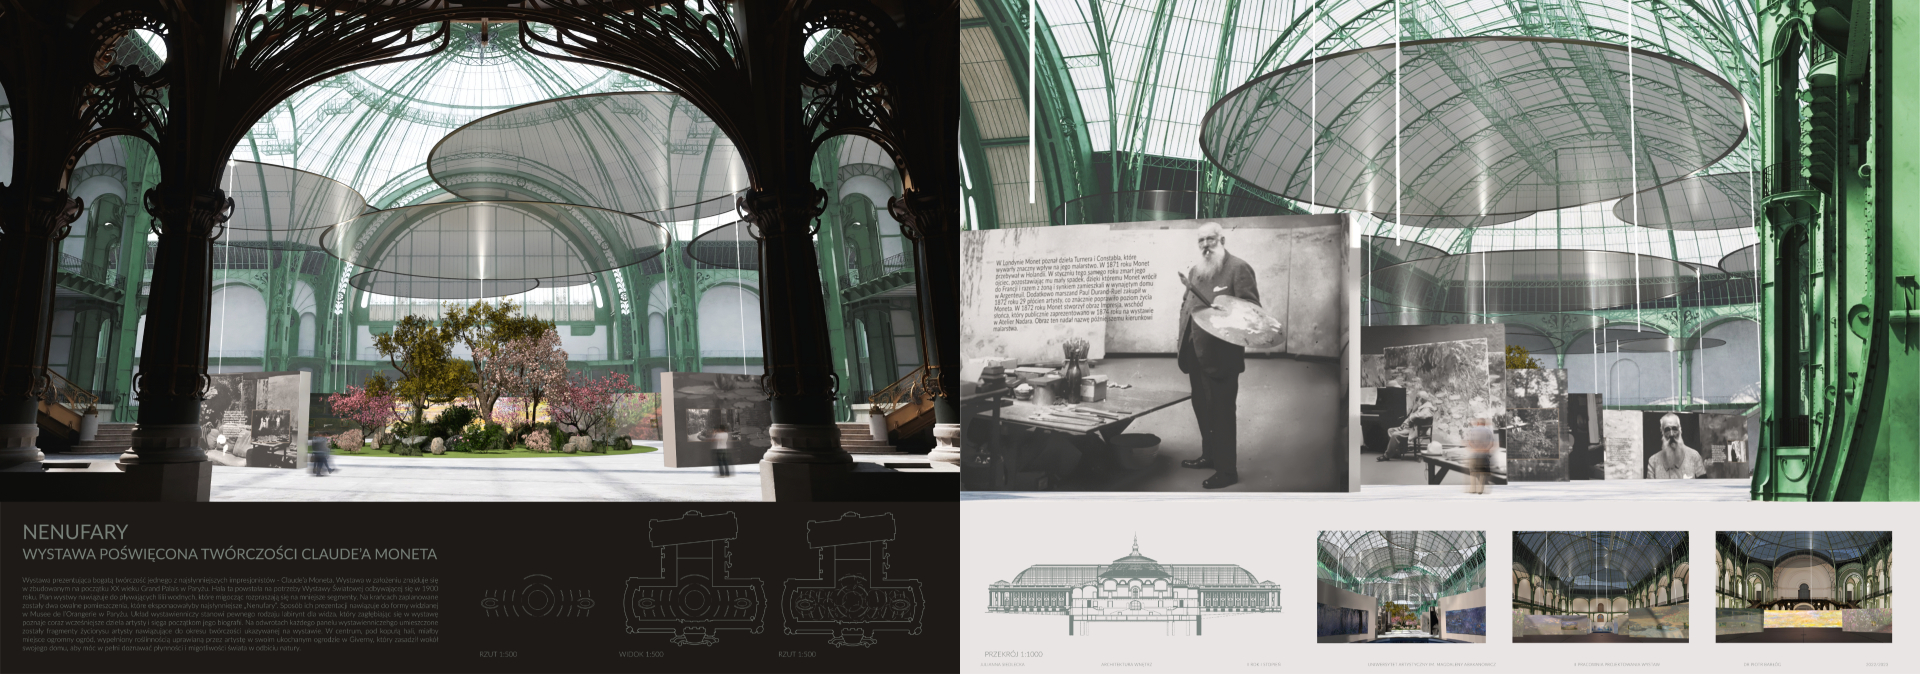 Projekt koncepcyjny wystawy czasowej poświęconej twórczości Claude’a Moneta w paryskim Grand Palais, zawierający komputerowe wizualizacje barwnych widoków perspektywicznych, ukazujących przestrzeń ekspozycji z punktu widzenia osoby zwiedzającej oraz rzut.